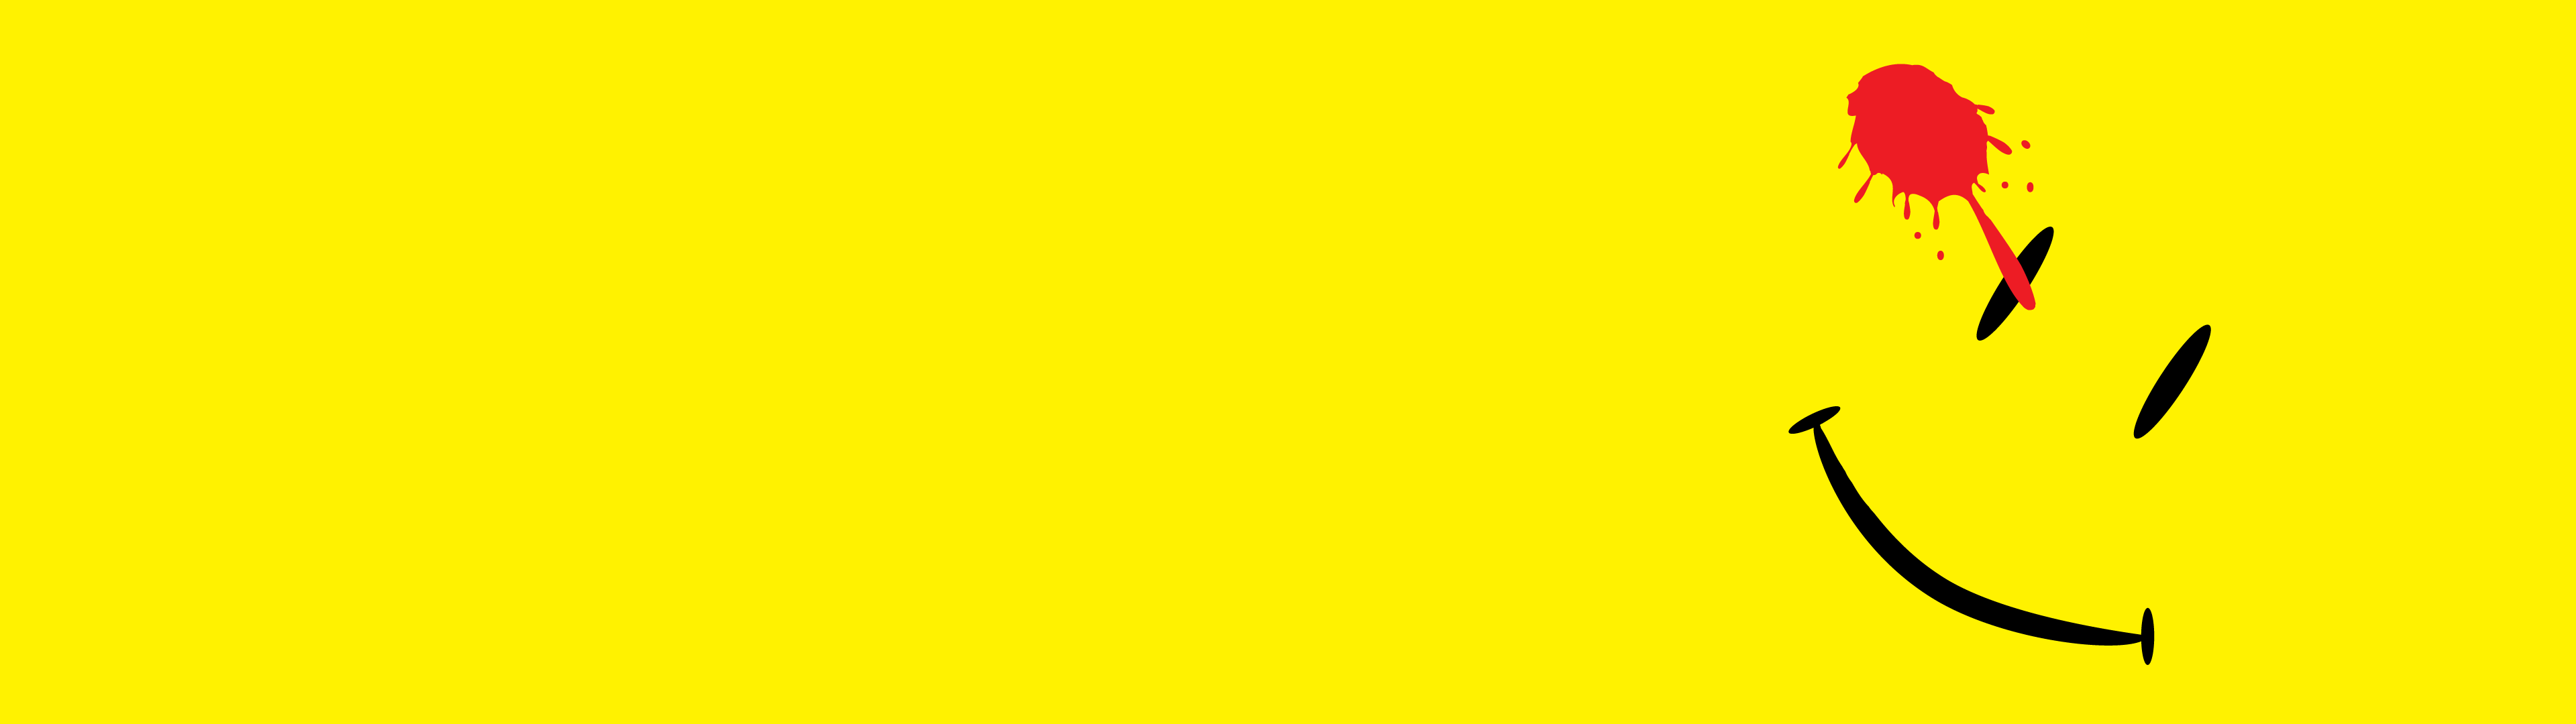 Смотритель, желтый цвет, смайлик - обои на рабочий стол